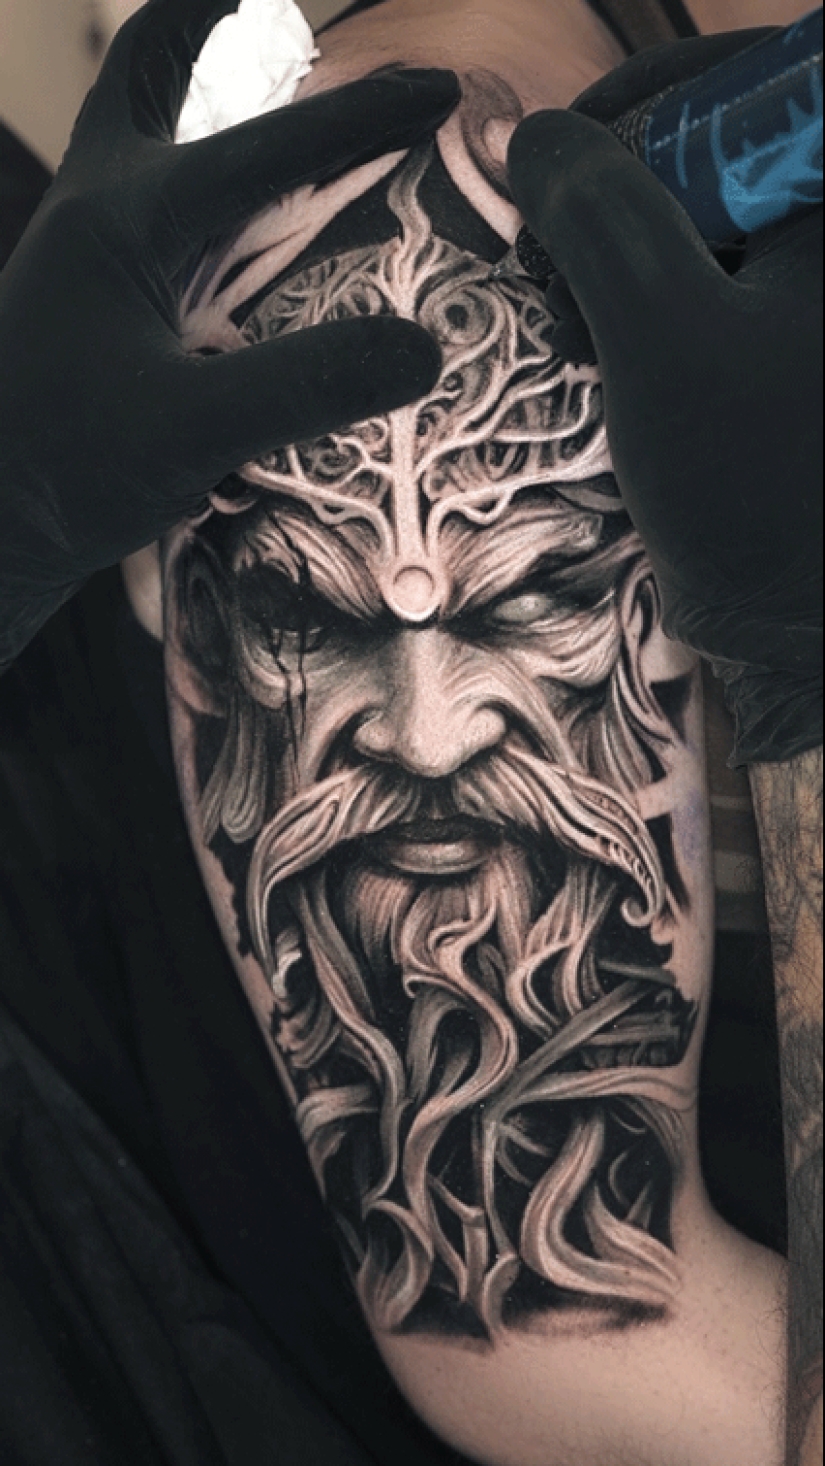 El tatuador Darwin Henríquez y sus obras maestras en la piel